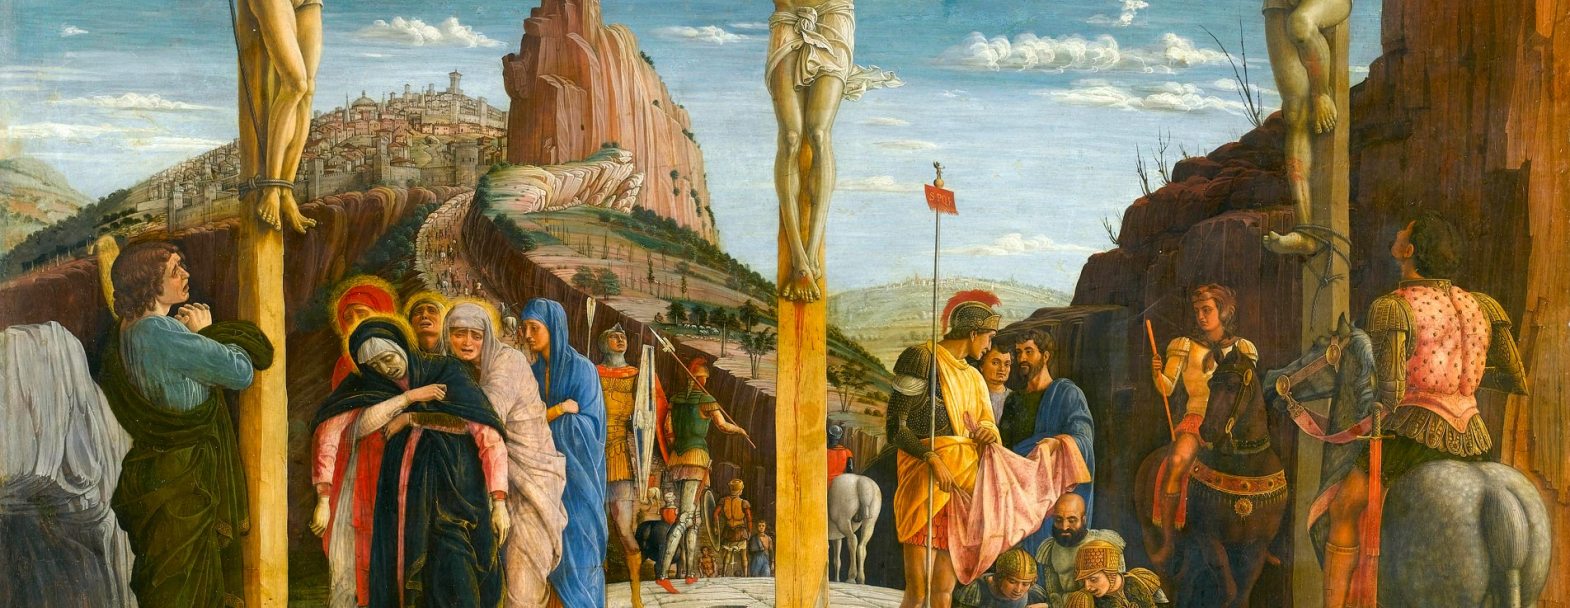 Le Calvaire, Extrait d'une partie centrale du retable de San Zeno à Vérone, peint par Andrea Mantegna en 1459 © leemage - Gettyimages / Josse